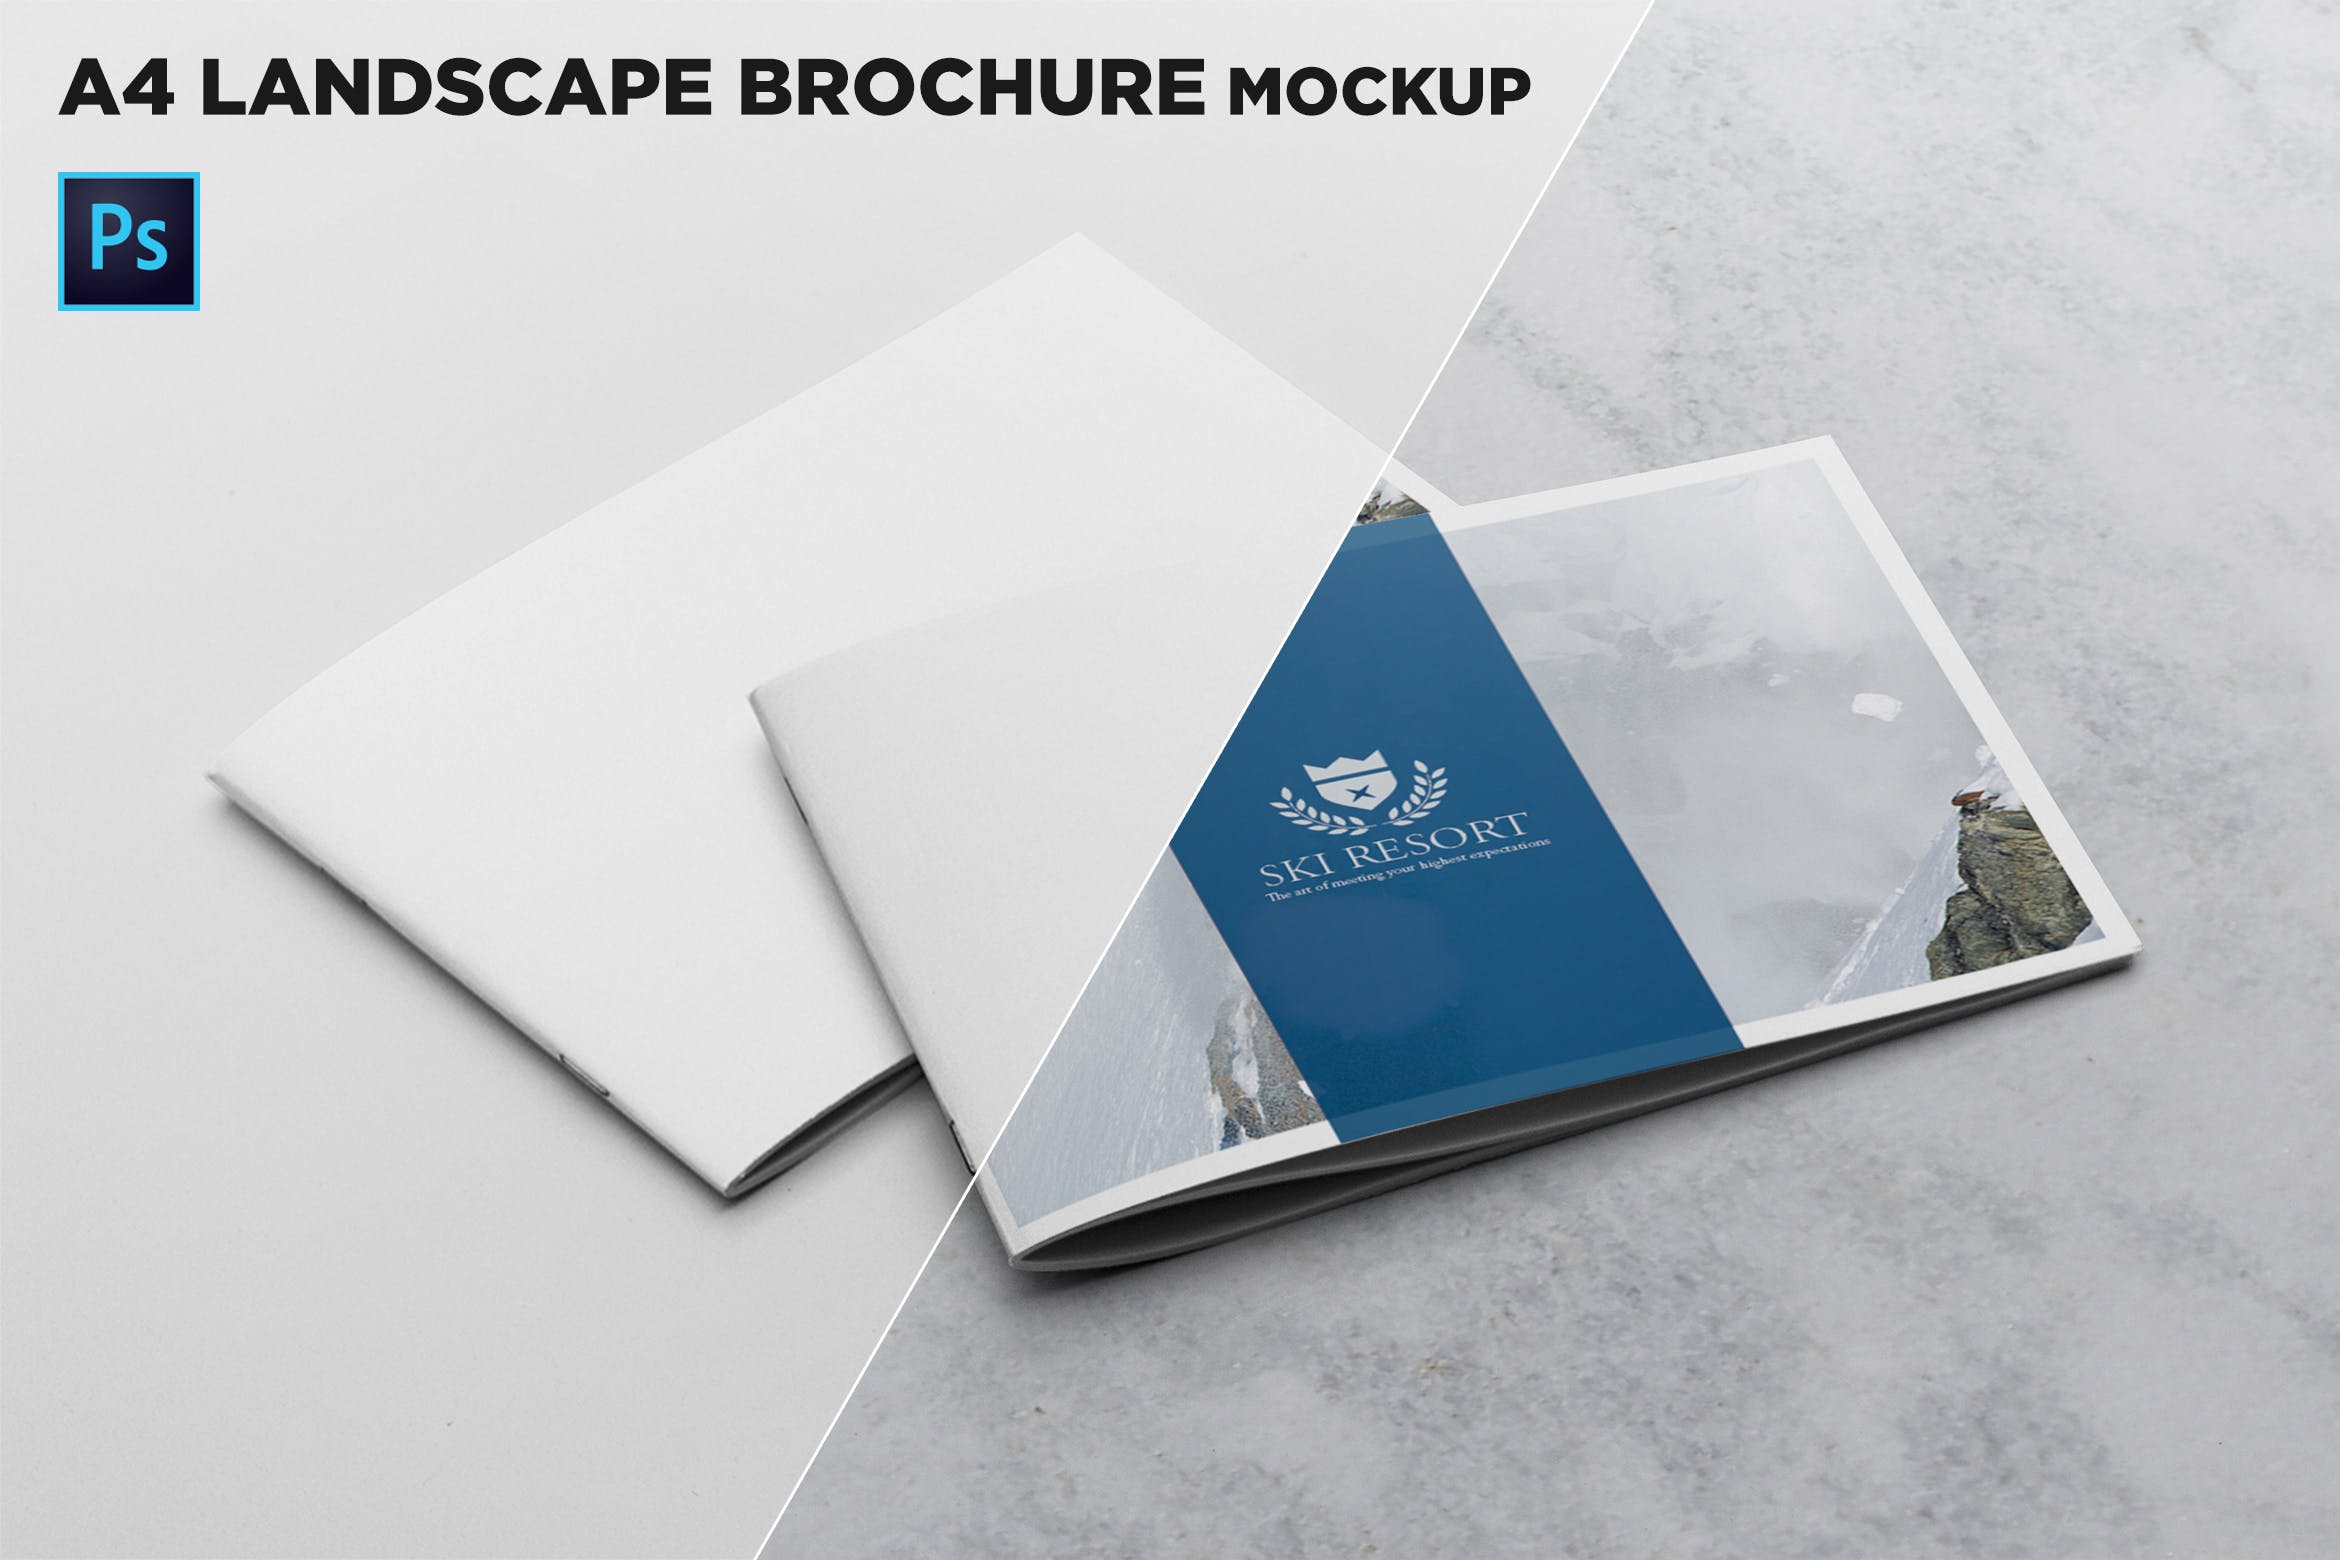 宣传画册/企业画册叠放效果图样机第一素材精选模板 2 Covers Landscape Brochure Mockup插图